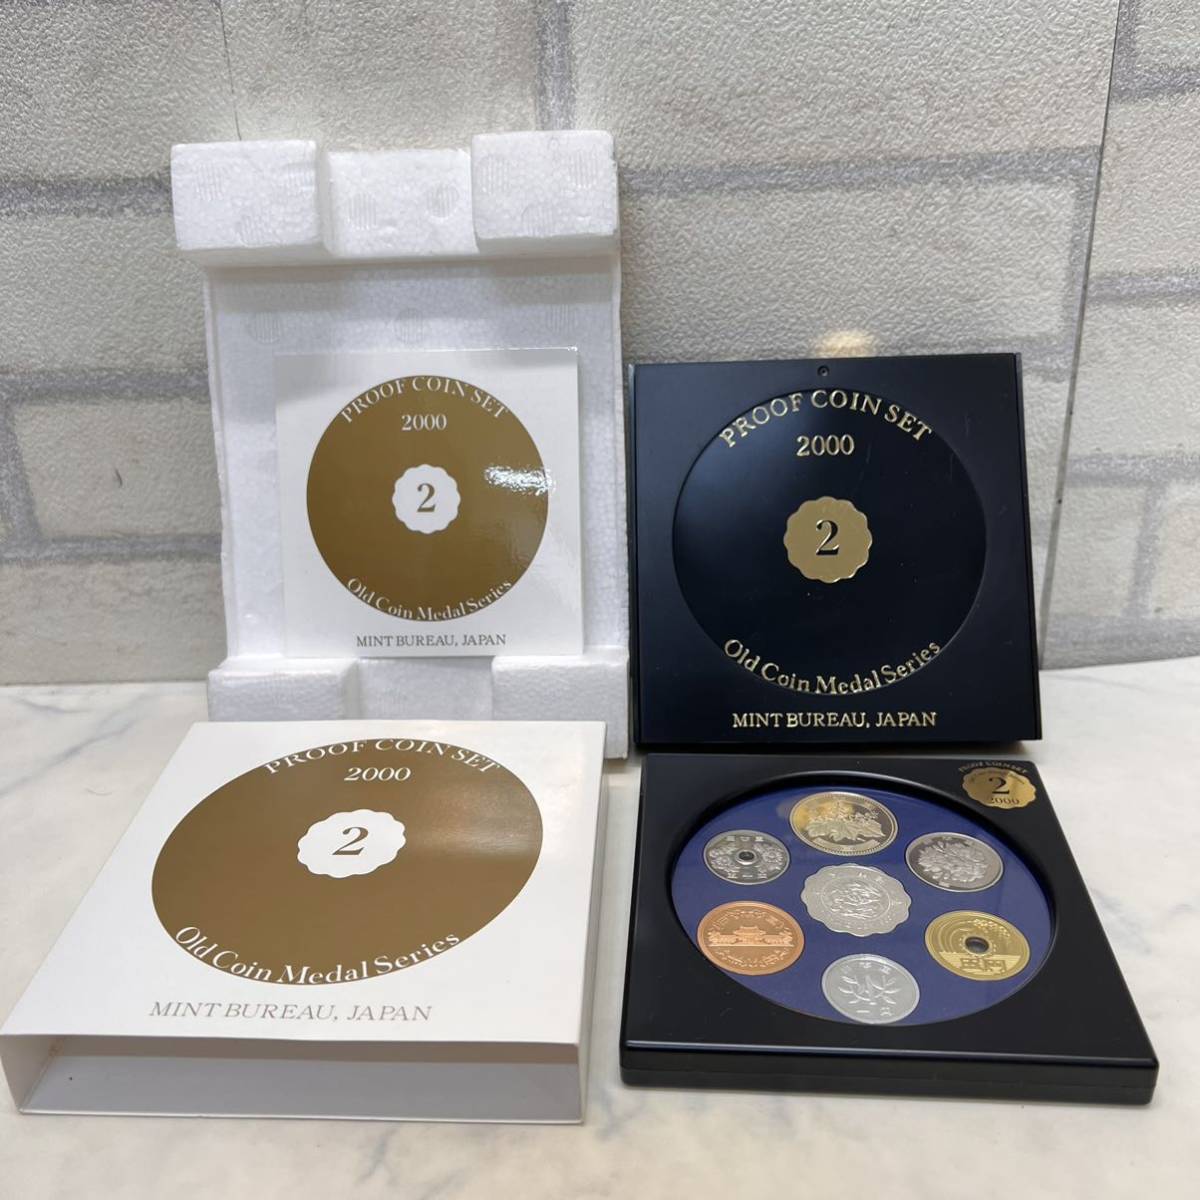 オールドコインメダルシリーズ 1999年 5個 2000年 6個 2001年 12個 まとめて オールドコイン 貨幣セット メダルシリーズ 